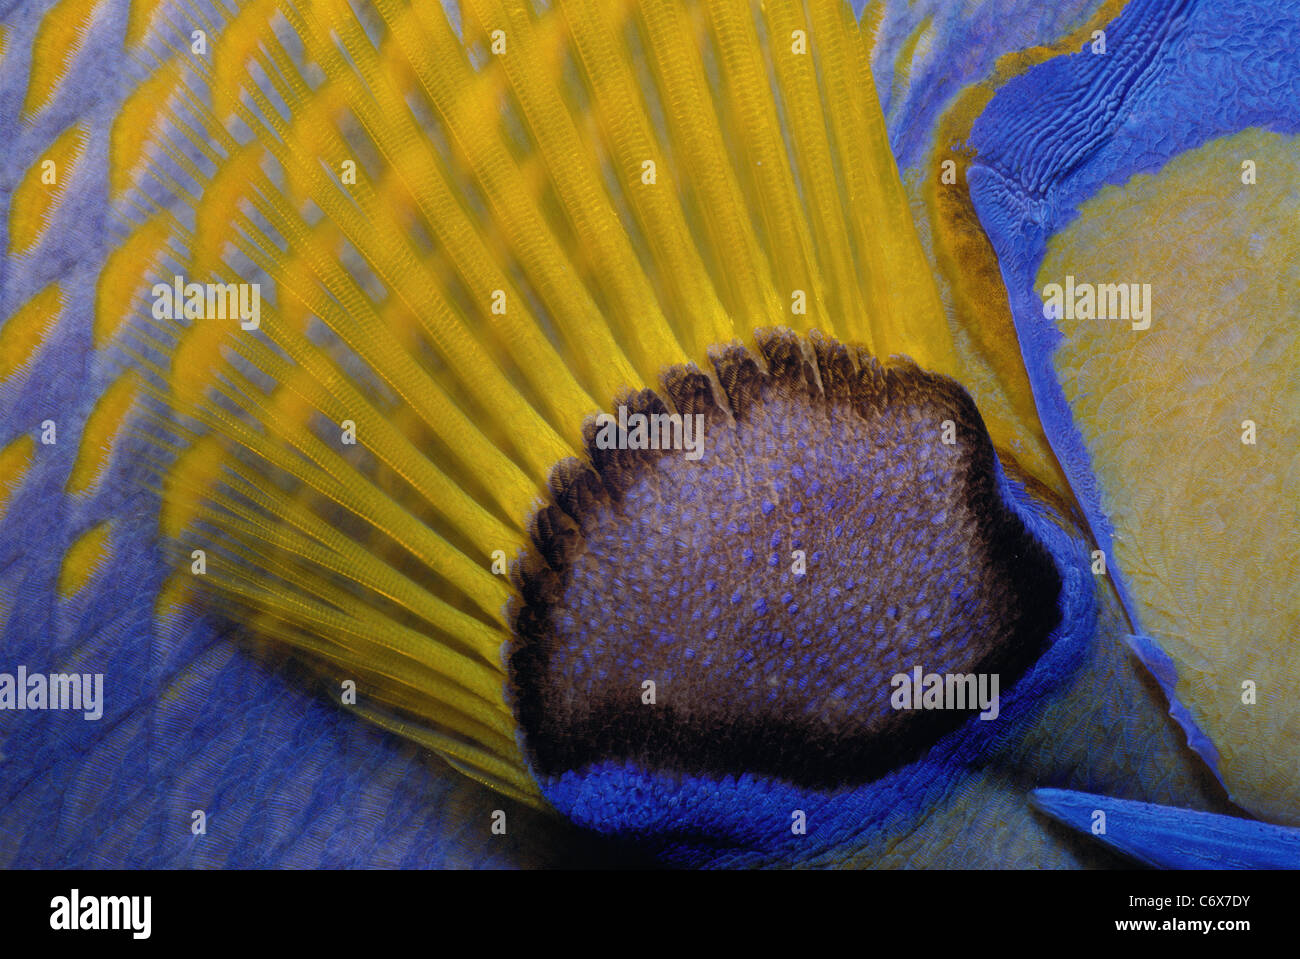 La nageoire pectorale de Queen Angelfish (Holacanthus ciliaris), Bahamas - Mer des Caraïbes Banque D'Images